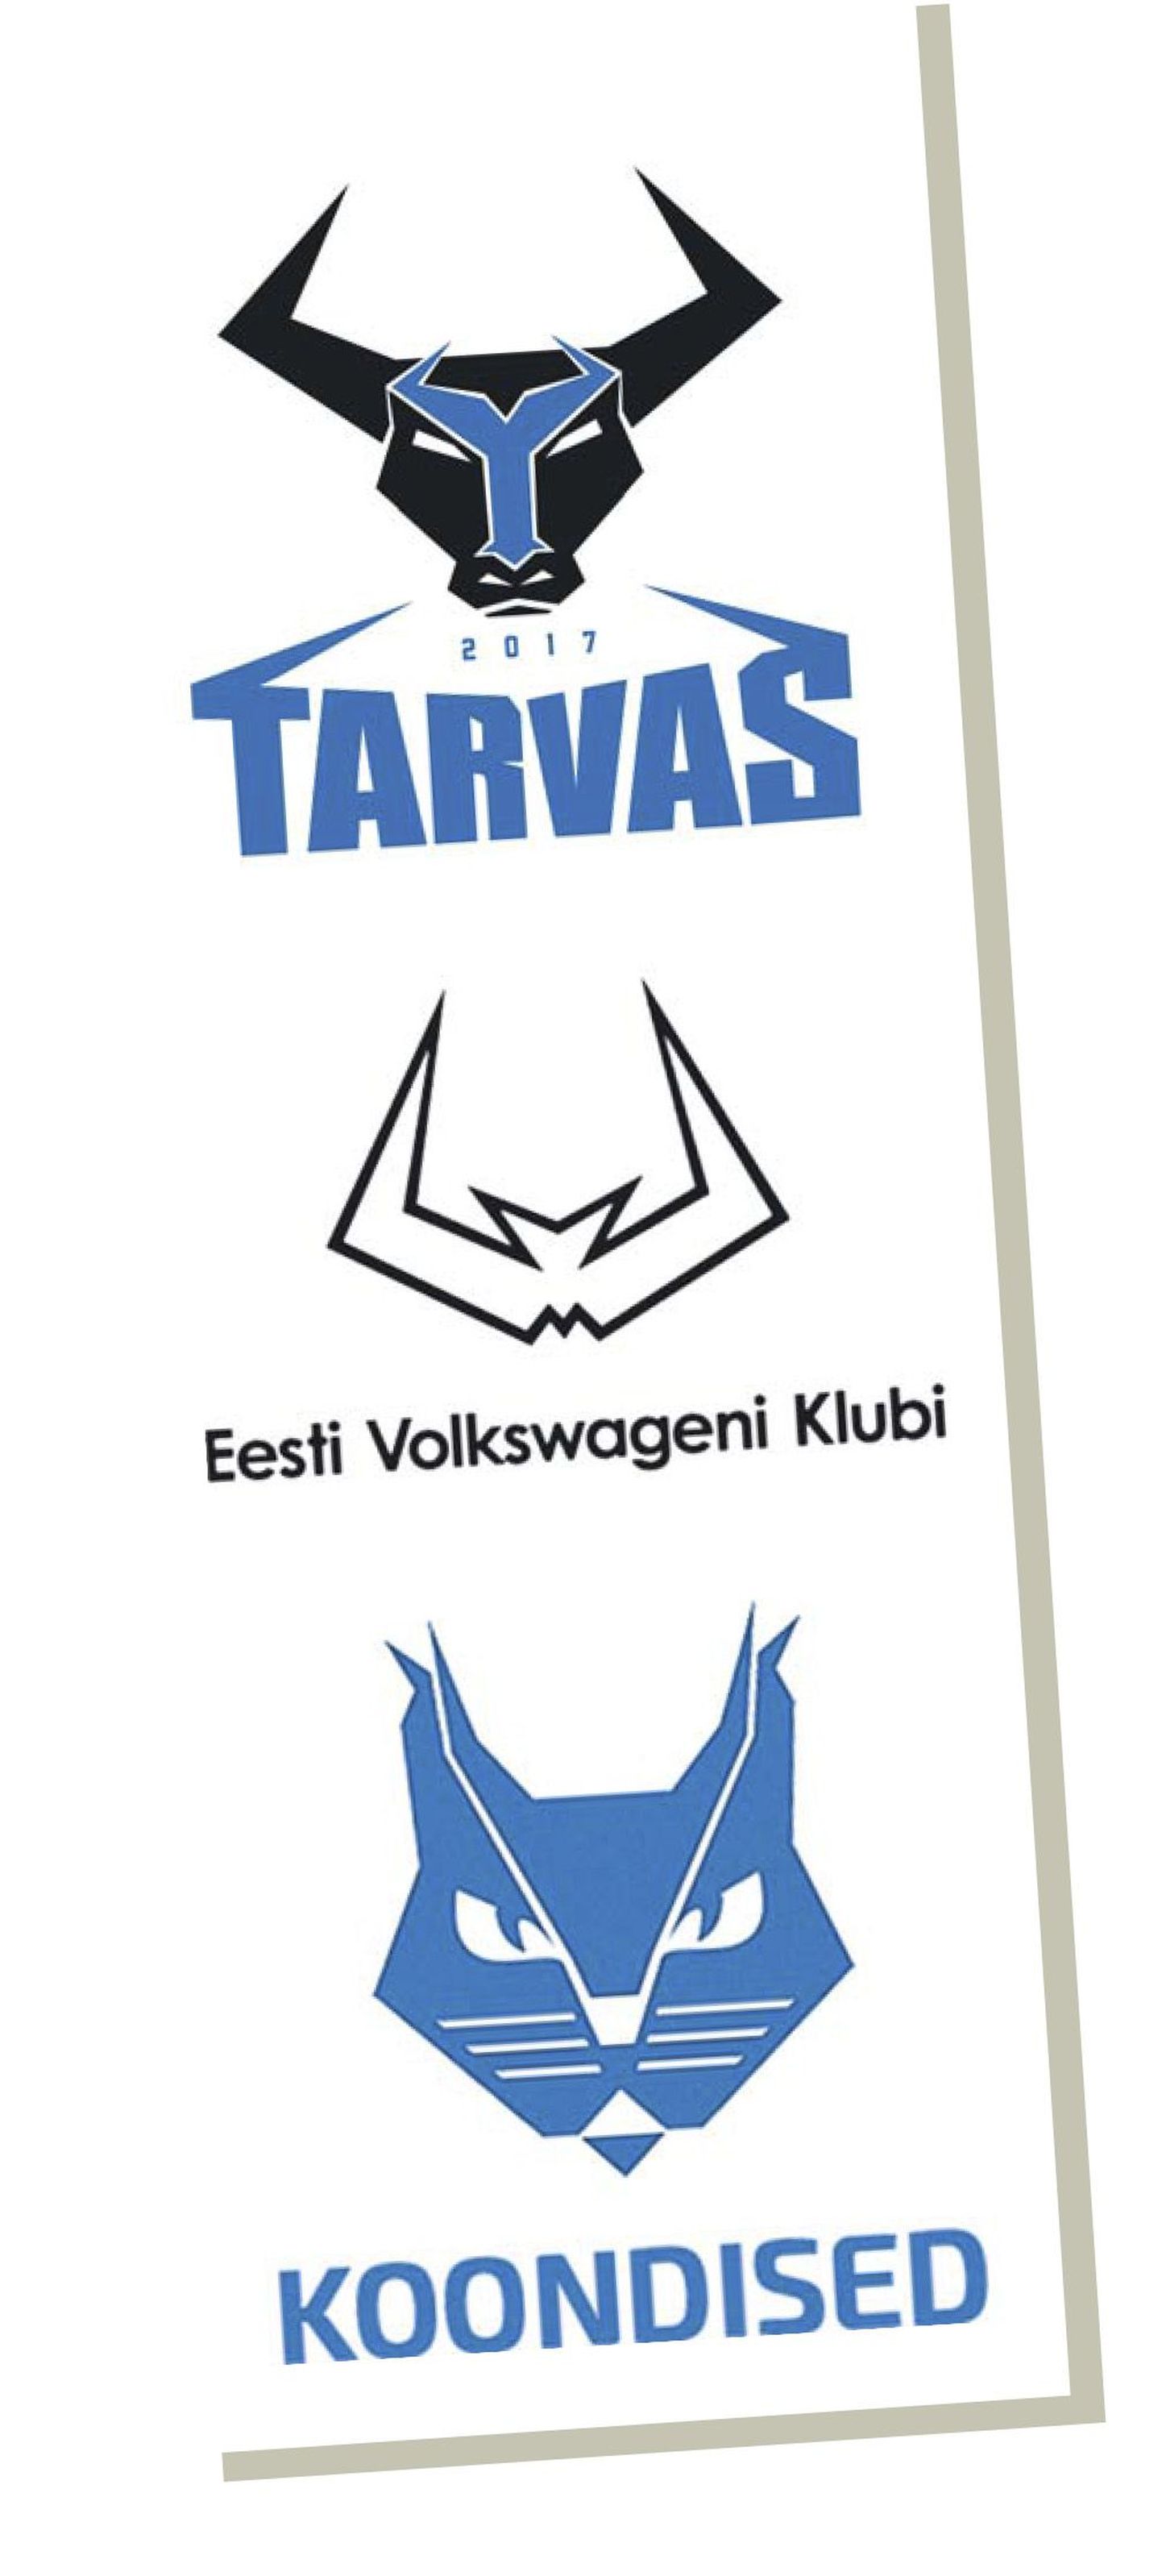 Rakvere Tarvas sai uue logo. Esialgu ei saagi aru, kas eeskujuks on Eesti koondiste embleem või Volkswageni klubi tunnusmärk.